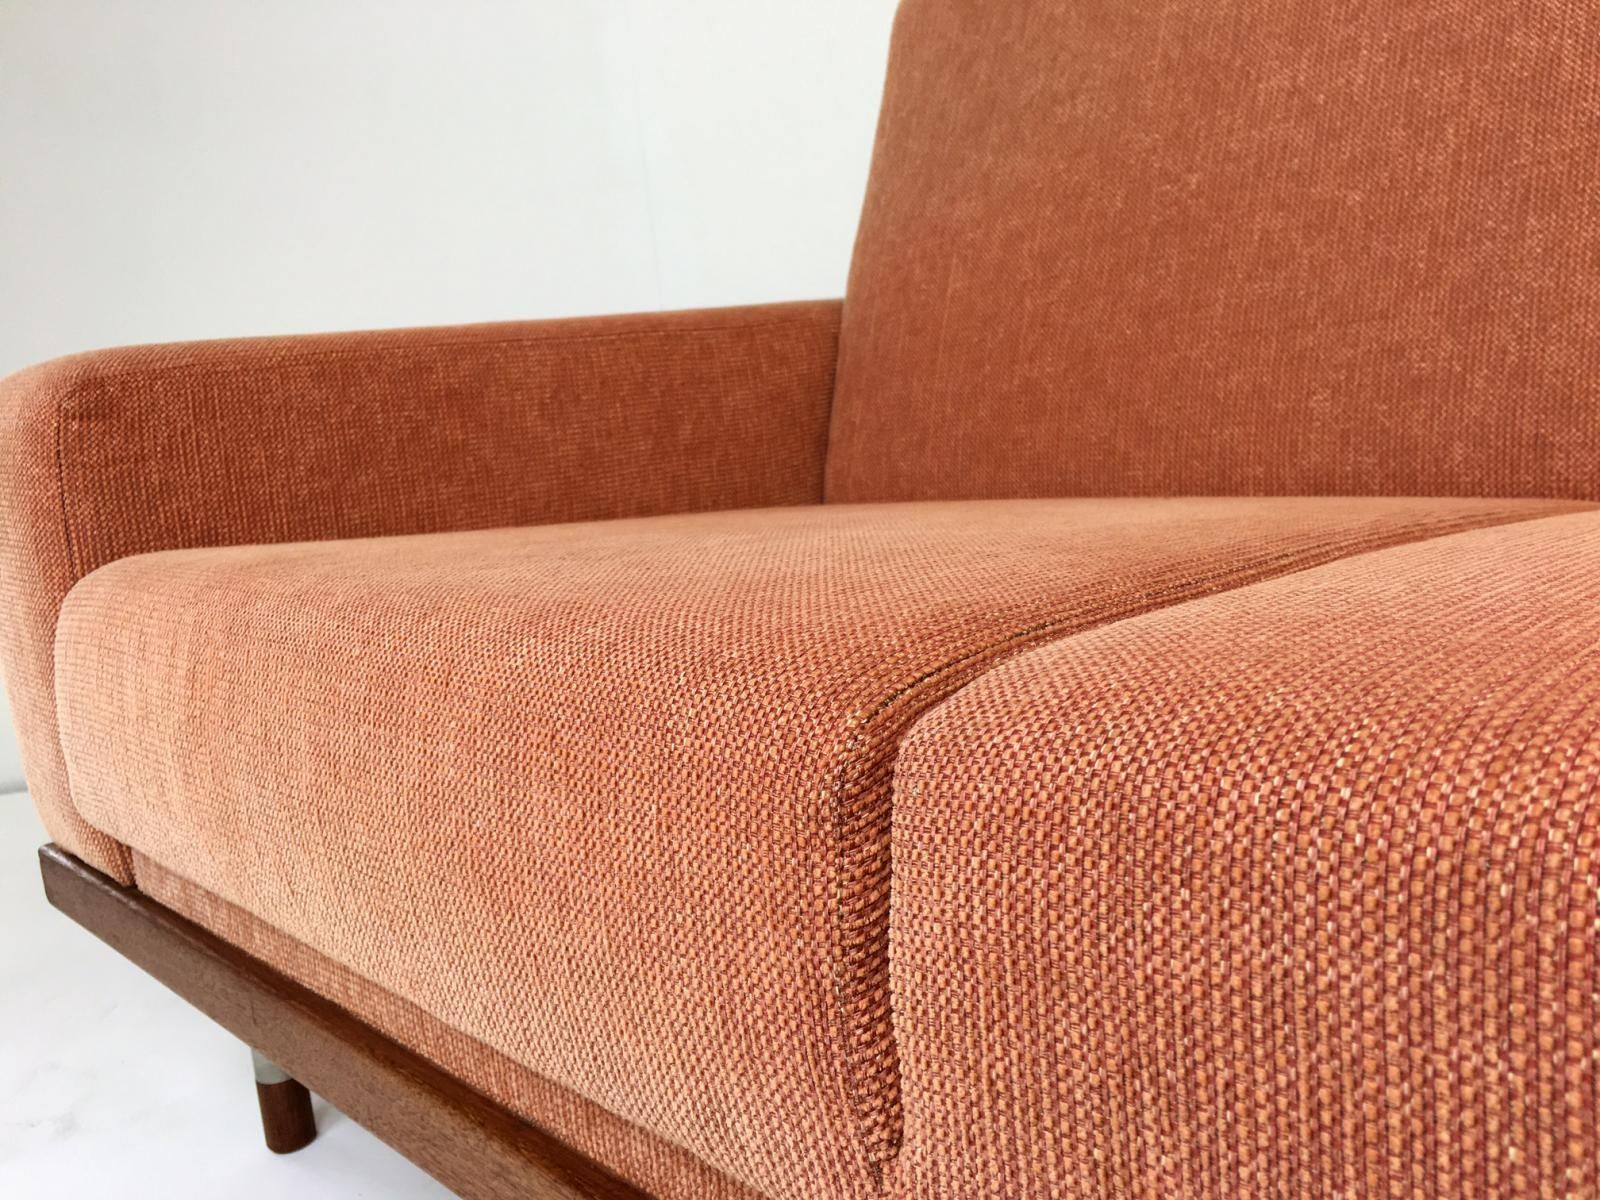 Teak Four Seater Sofa, 1960s For Sale At Pamono Throughout Four Seater Sofas (Photo 18 of 20)